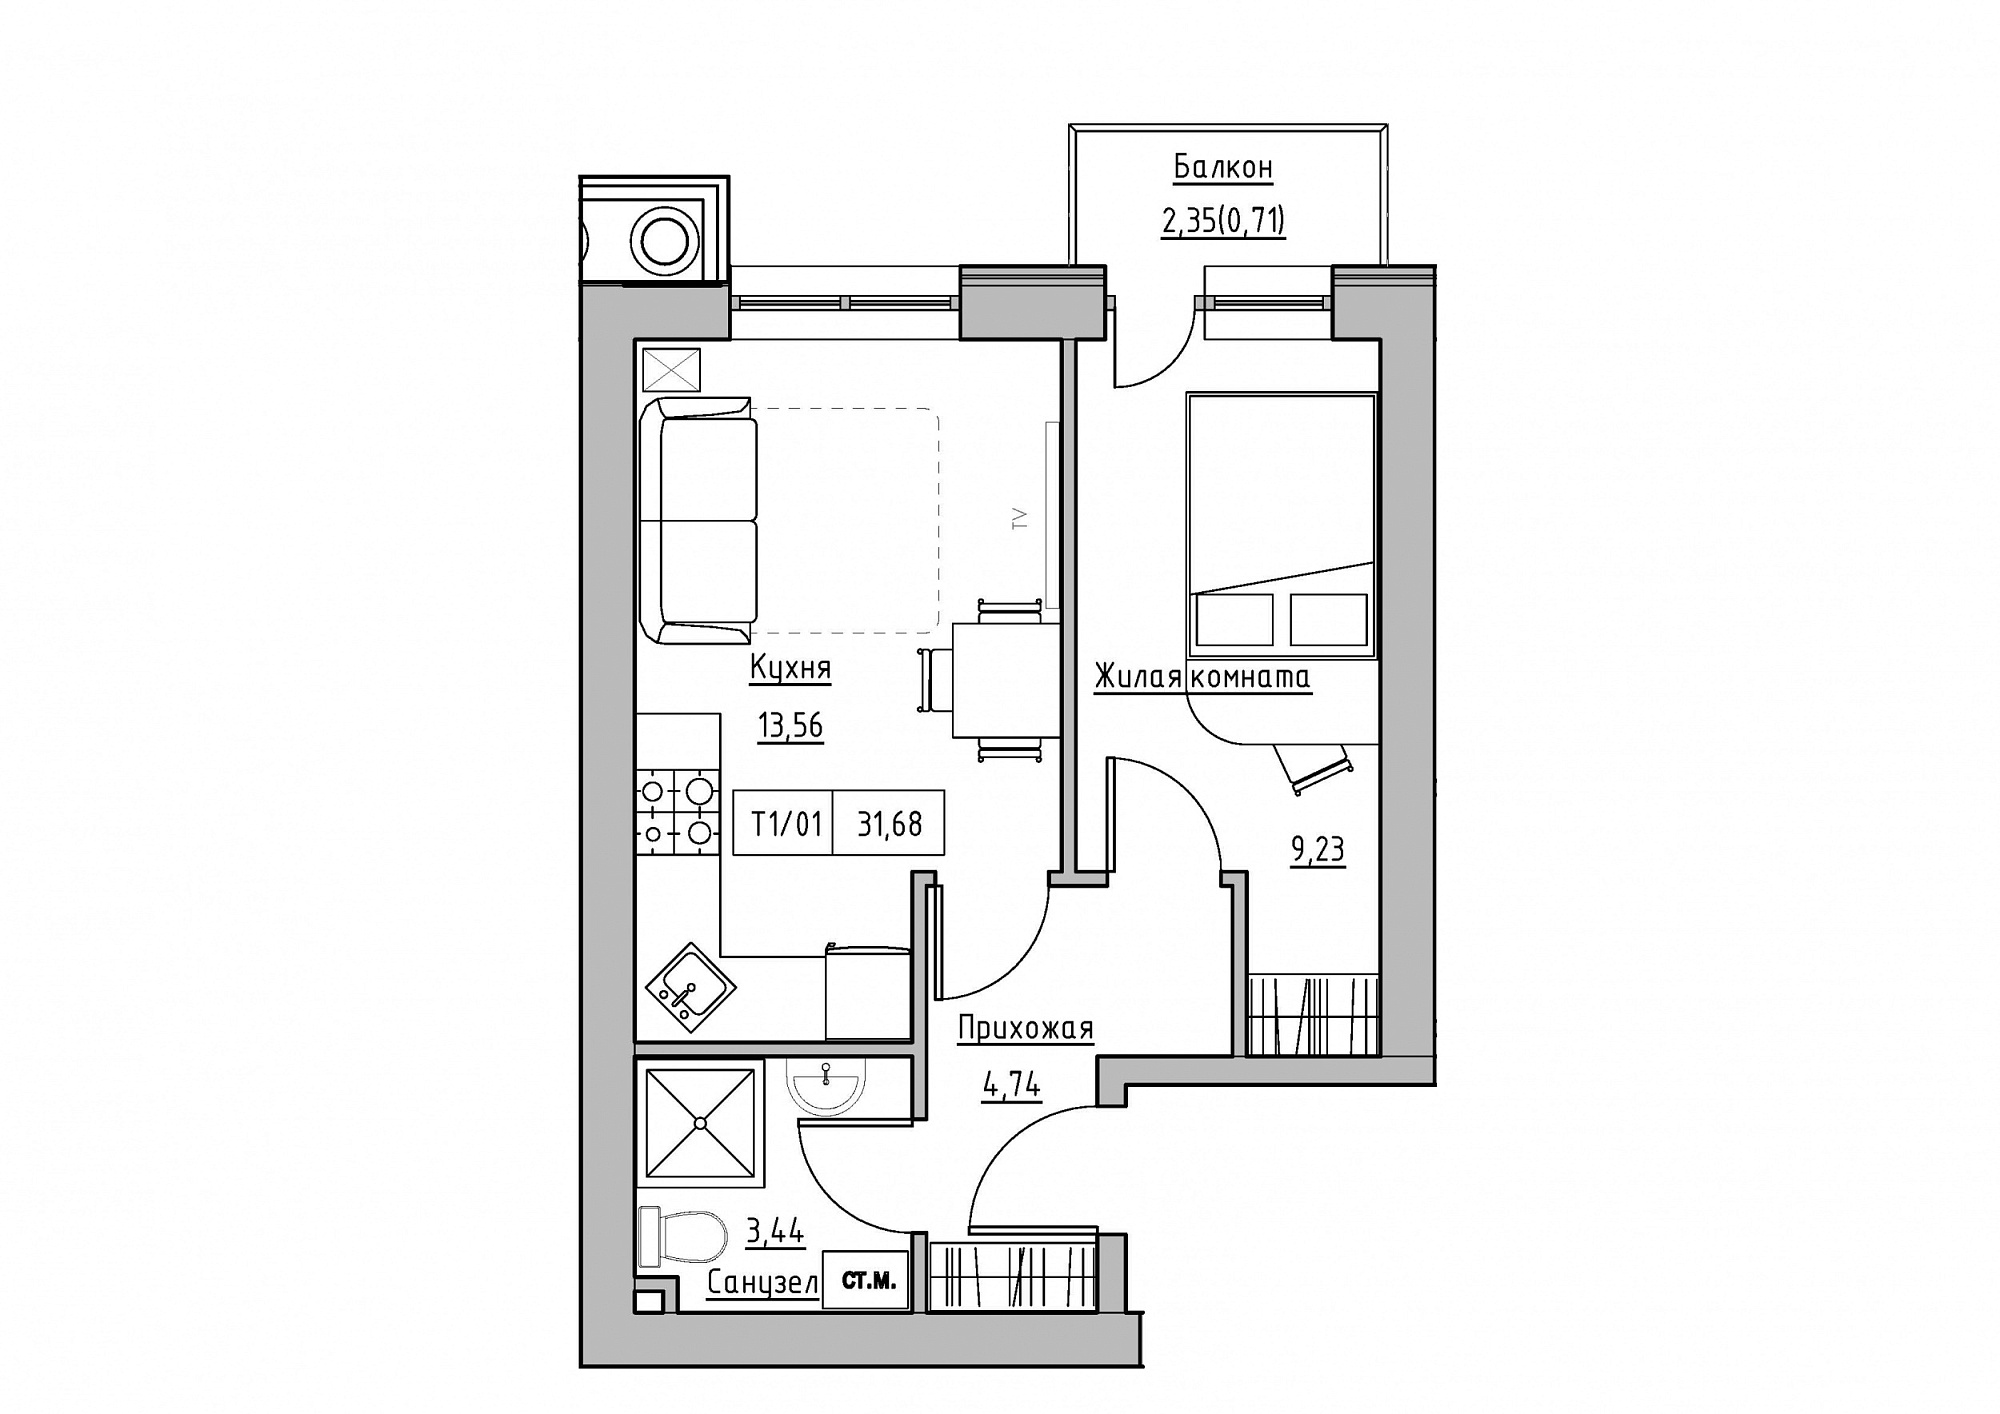 Планировка 1-к квартира площей 31.68м2, KS-011-02/0013.